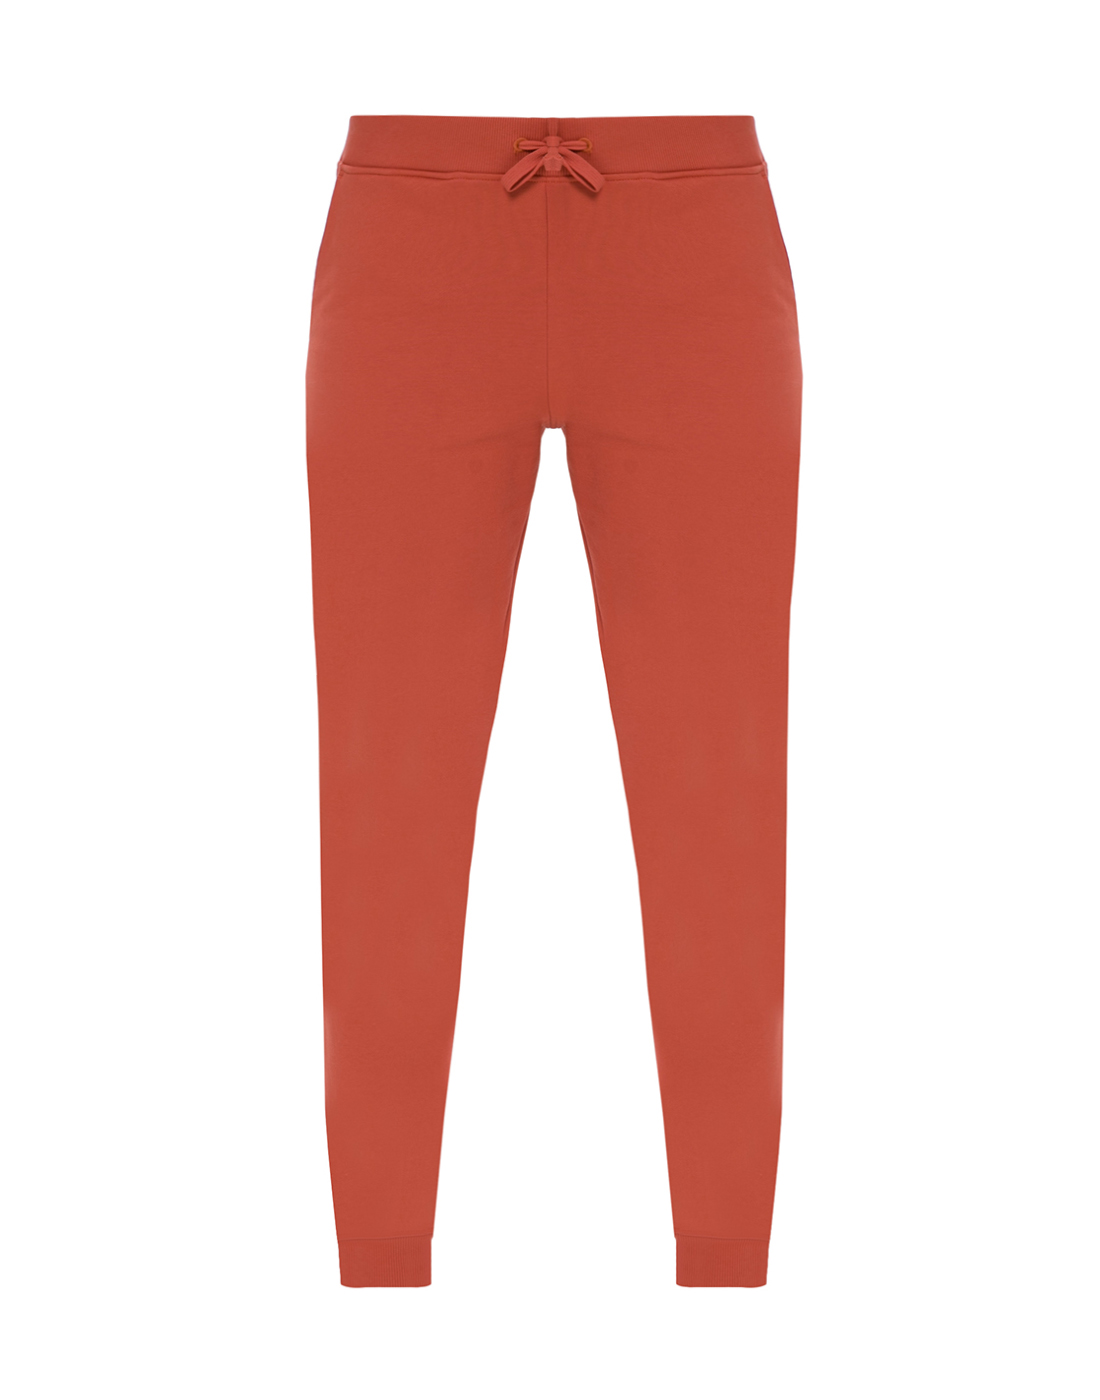 Брюки оранжевые женские Falke Fashion S66216/8911-1